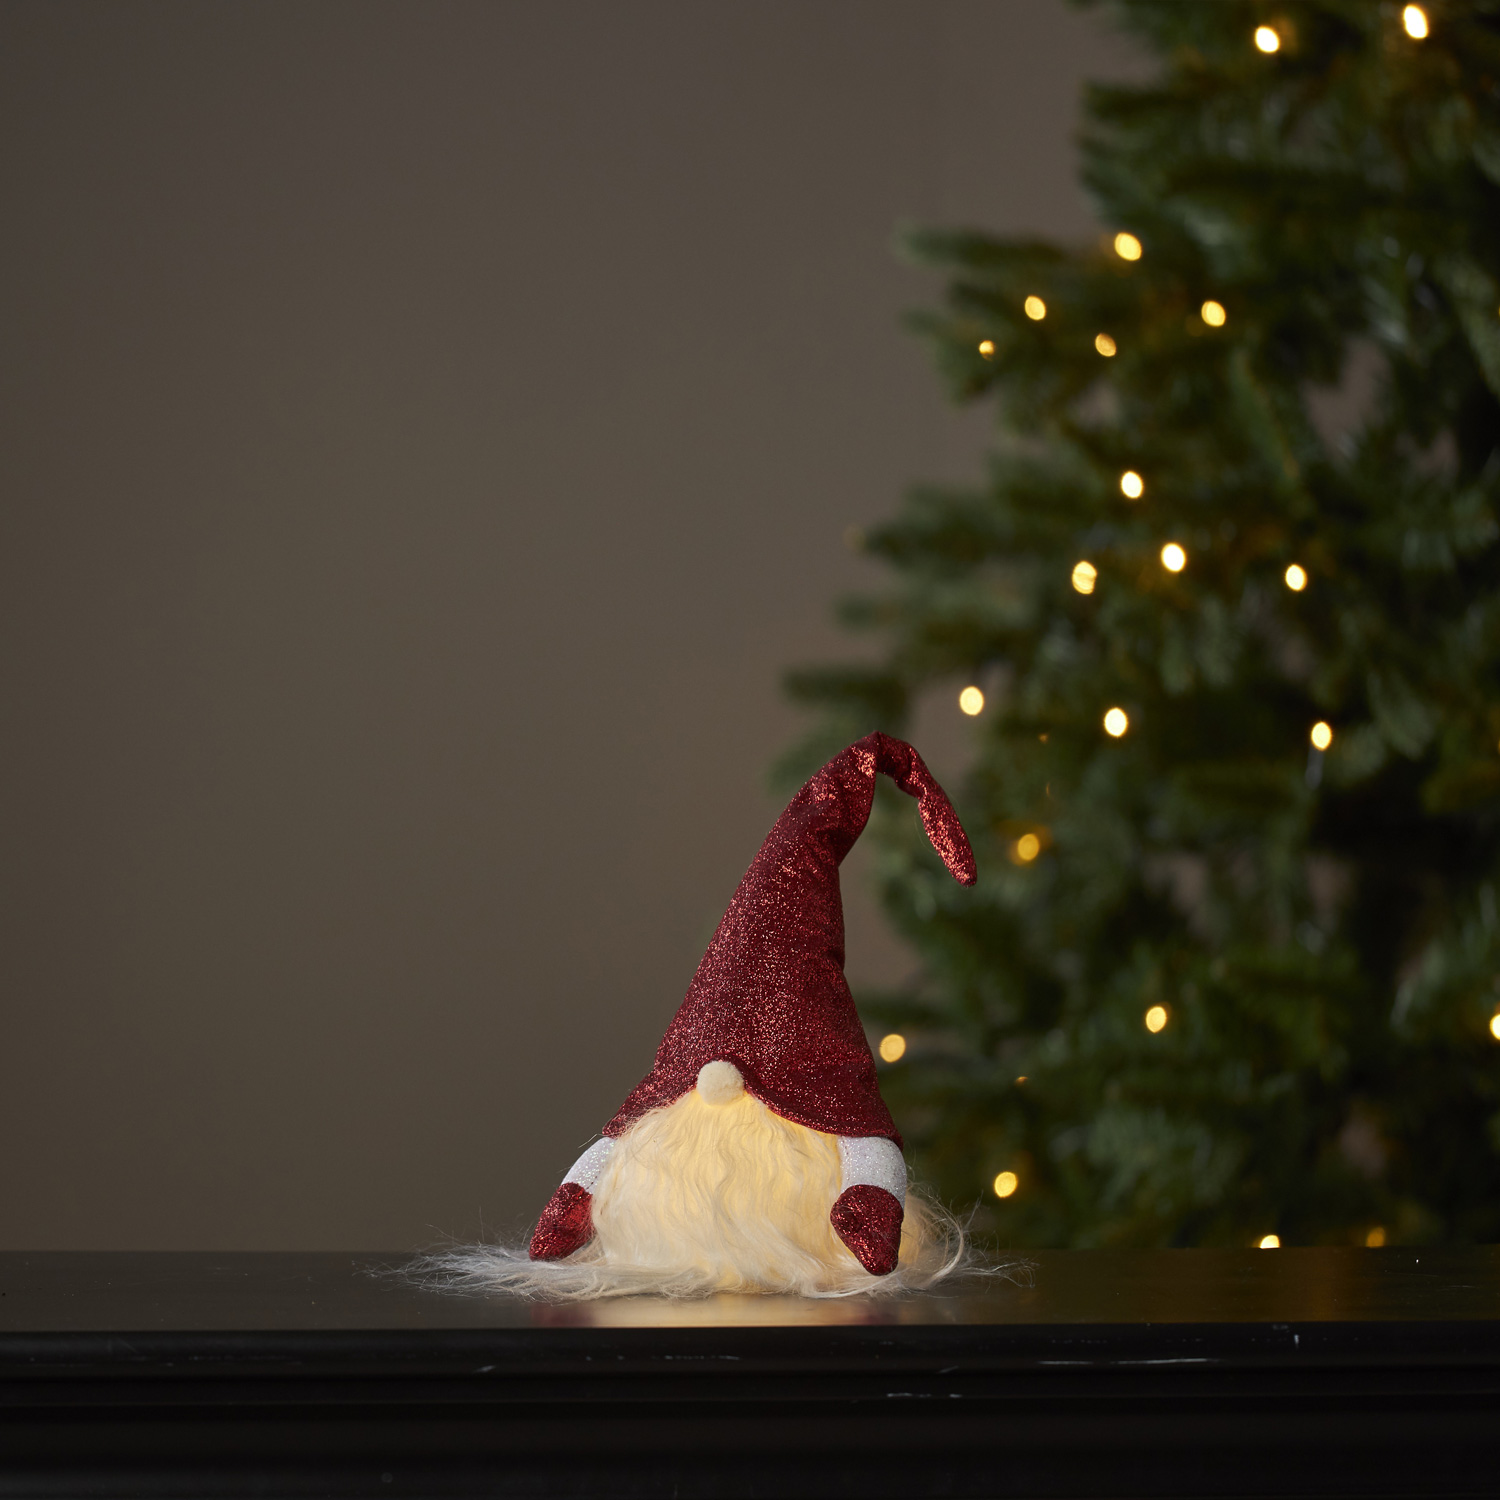 LLED Stoff Wichtel mit Mütze - Weihnachtsmann - 1 warmweiße LED - H: 28cm - inkl. Batterie - rot